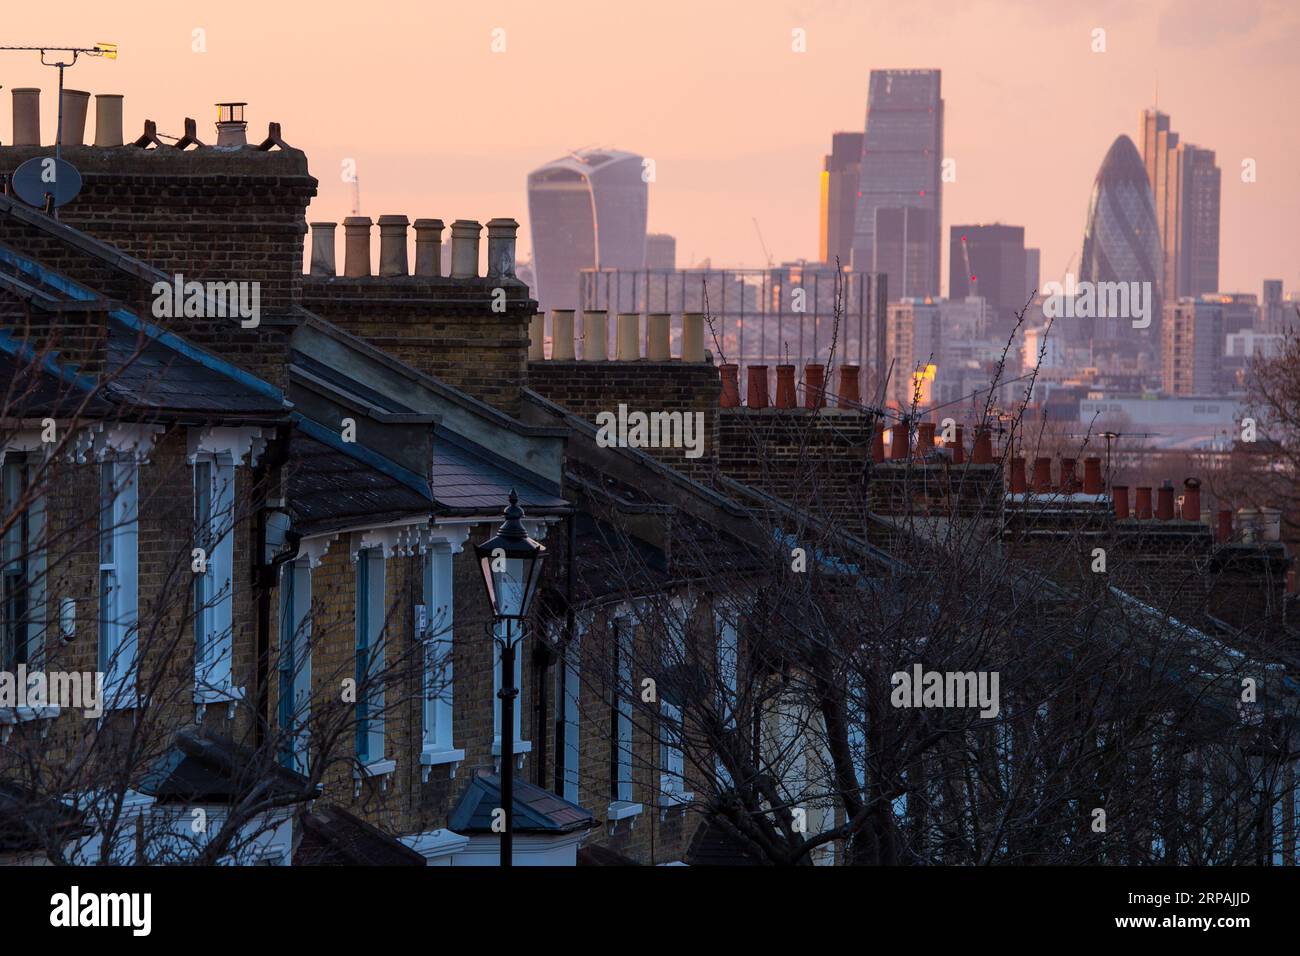 Aktenfoto vom 31/03/16 von einer allgemeinen Ansicht der Häuser im Süden Londons, da ehemalige Wohnungseigentümer, die zu Mietern wurden, nun eine helfende Hand zurück auf die Leiter bekommen können, so die Skipton Building Society. Stockfoto